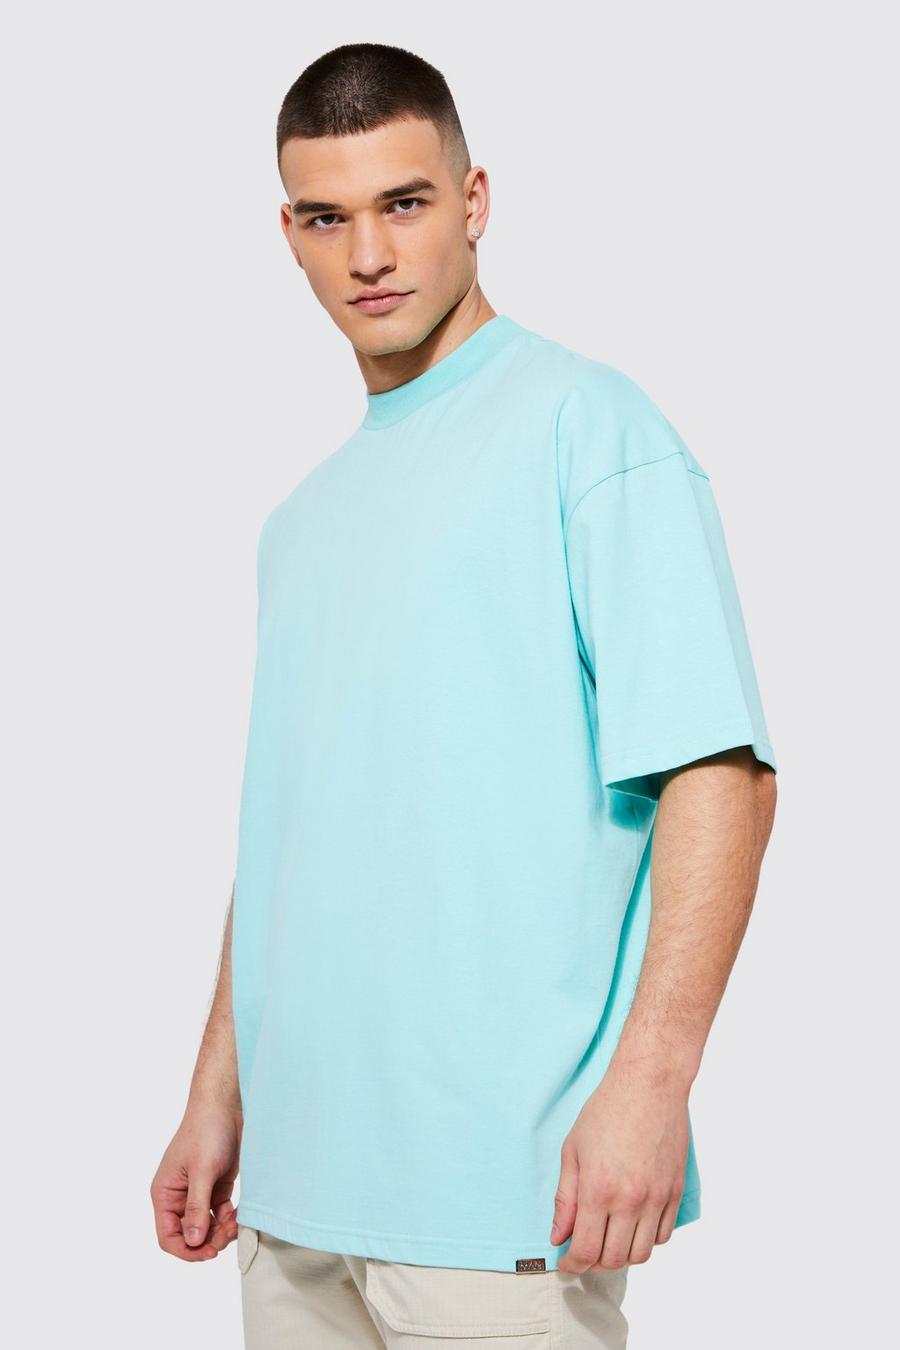 Aqua blue Tall Oversized Heavyweight Extended Neck T-shirt